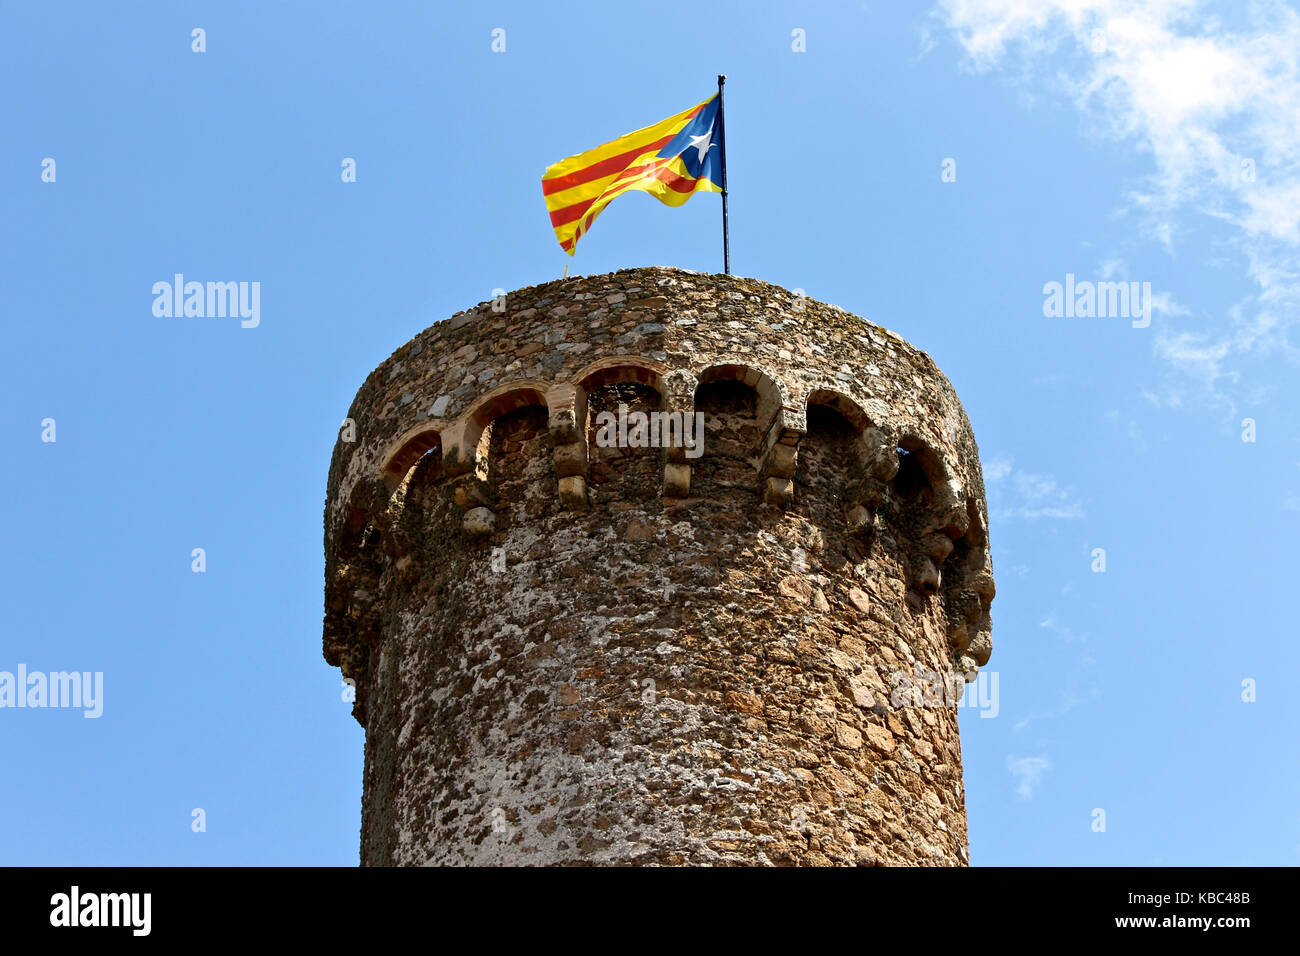 Eine Senyera estelada, der inoffiziellen Flagge in der Regel von dem katalanischen Unabhängigkeit Unterstützer geflogen, winken auf dem Turm der Festung Tossa de Mar, Katalonien, S Stockfoto